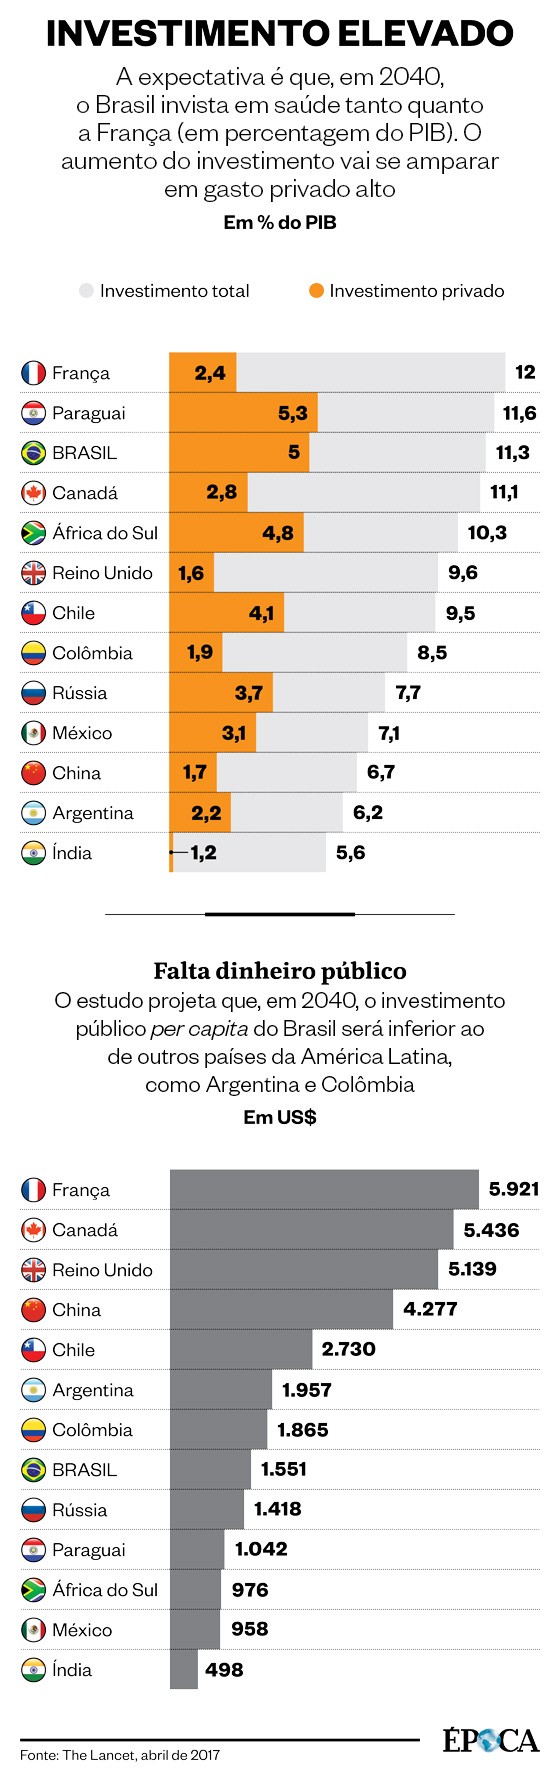 Quadros comparativos sobre o investimento em saúde pública e privada no Brasil e em outros países do mundo (Foto: ÉPOCA)